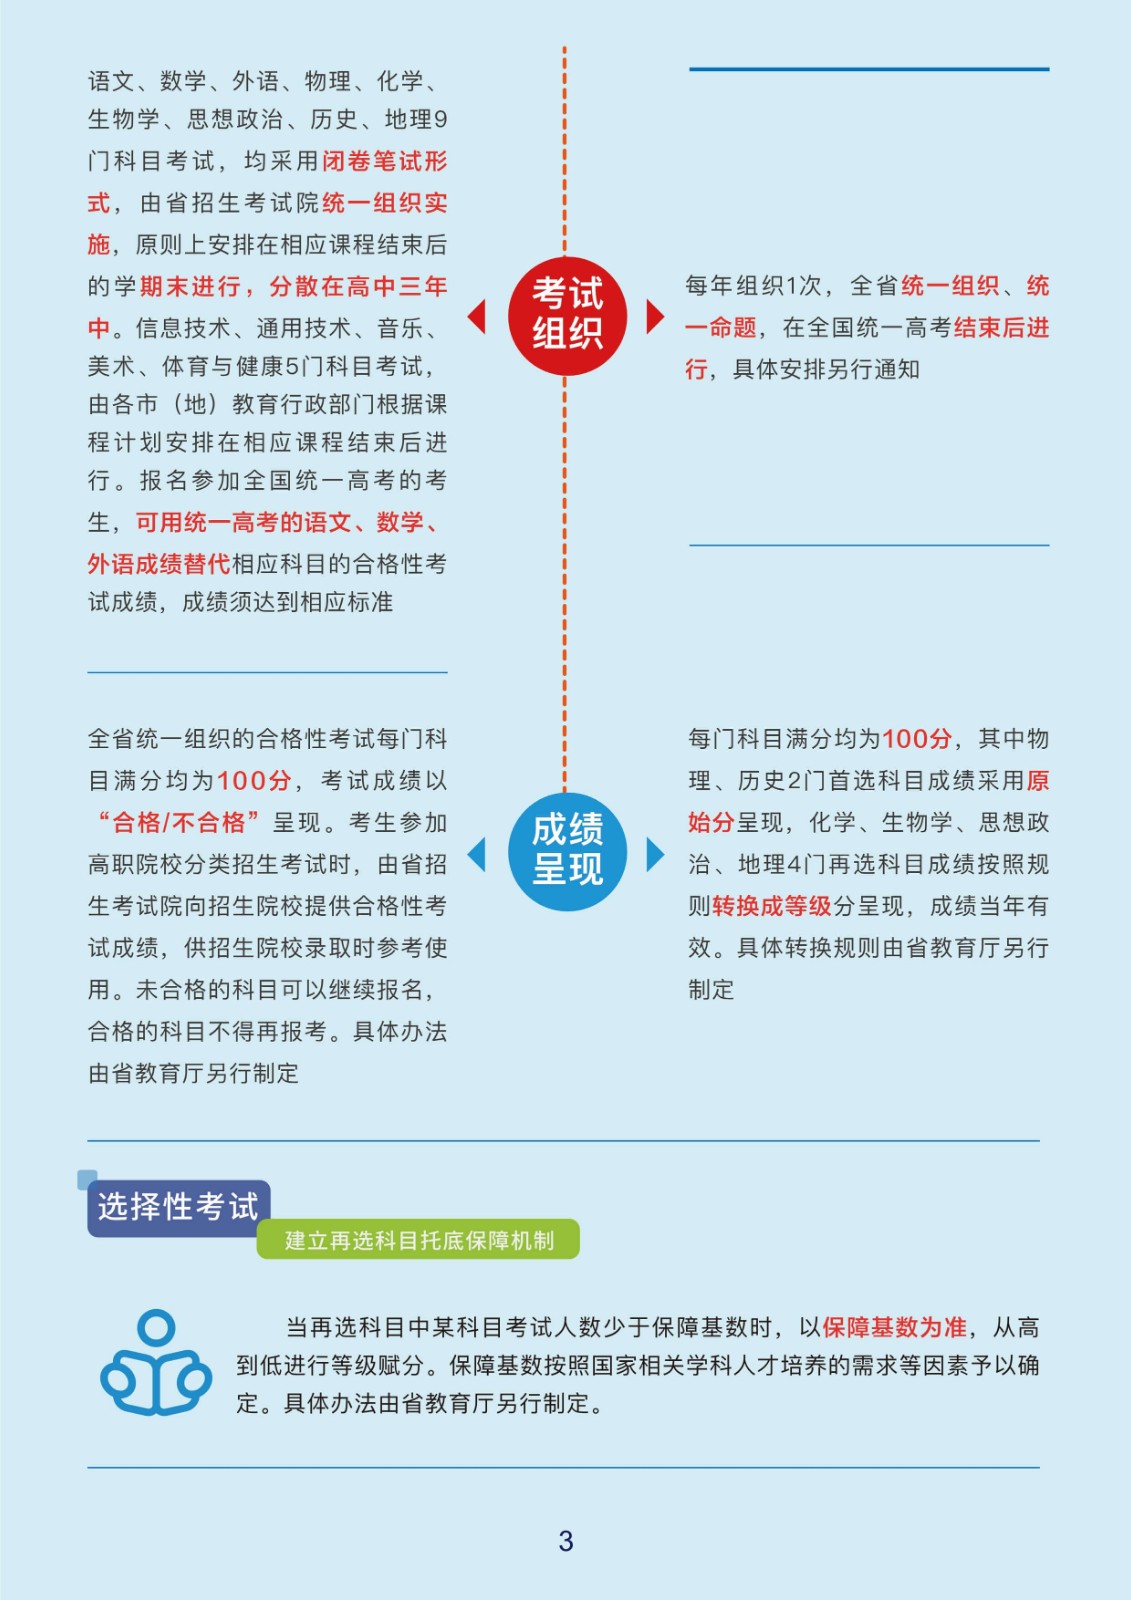 2022年黑龙江省统一考试综合改革实施方案图解